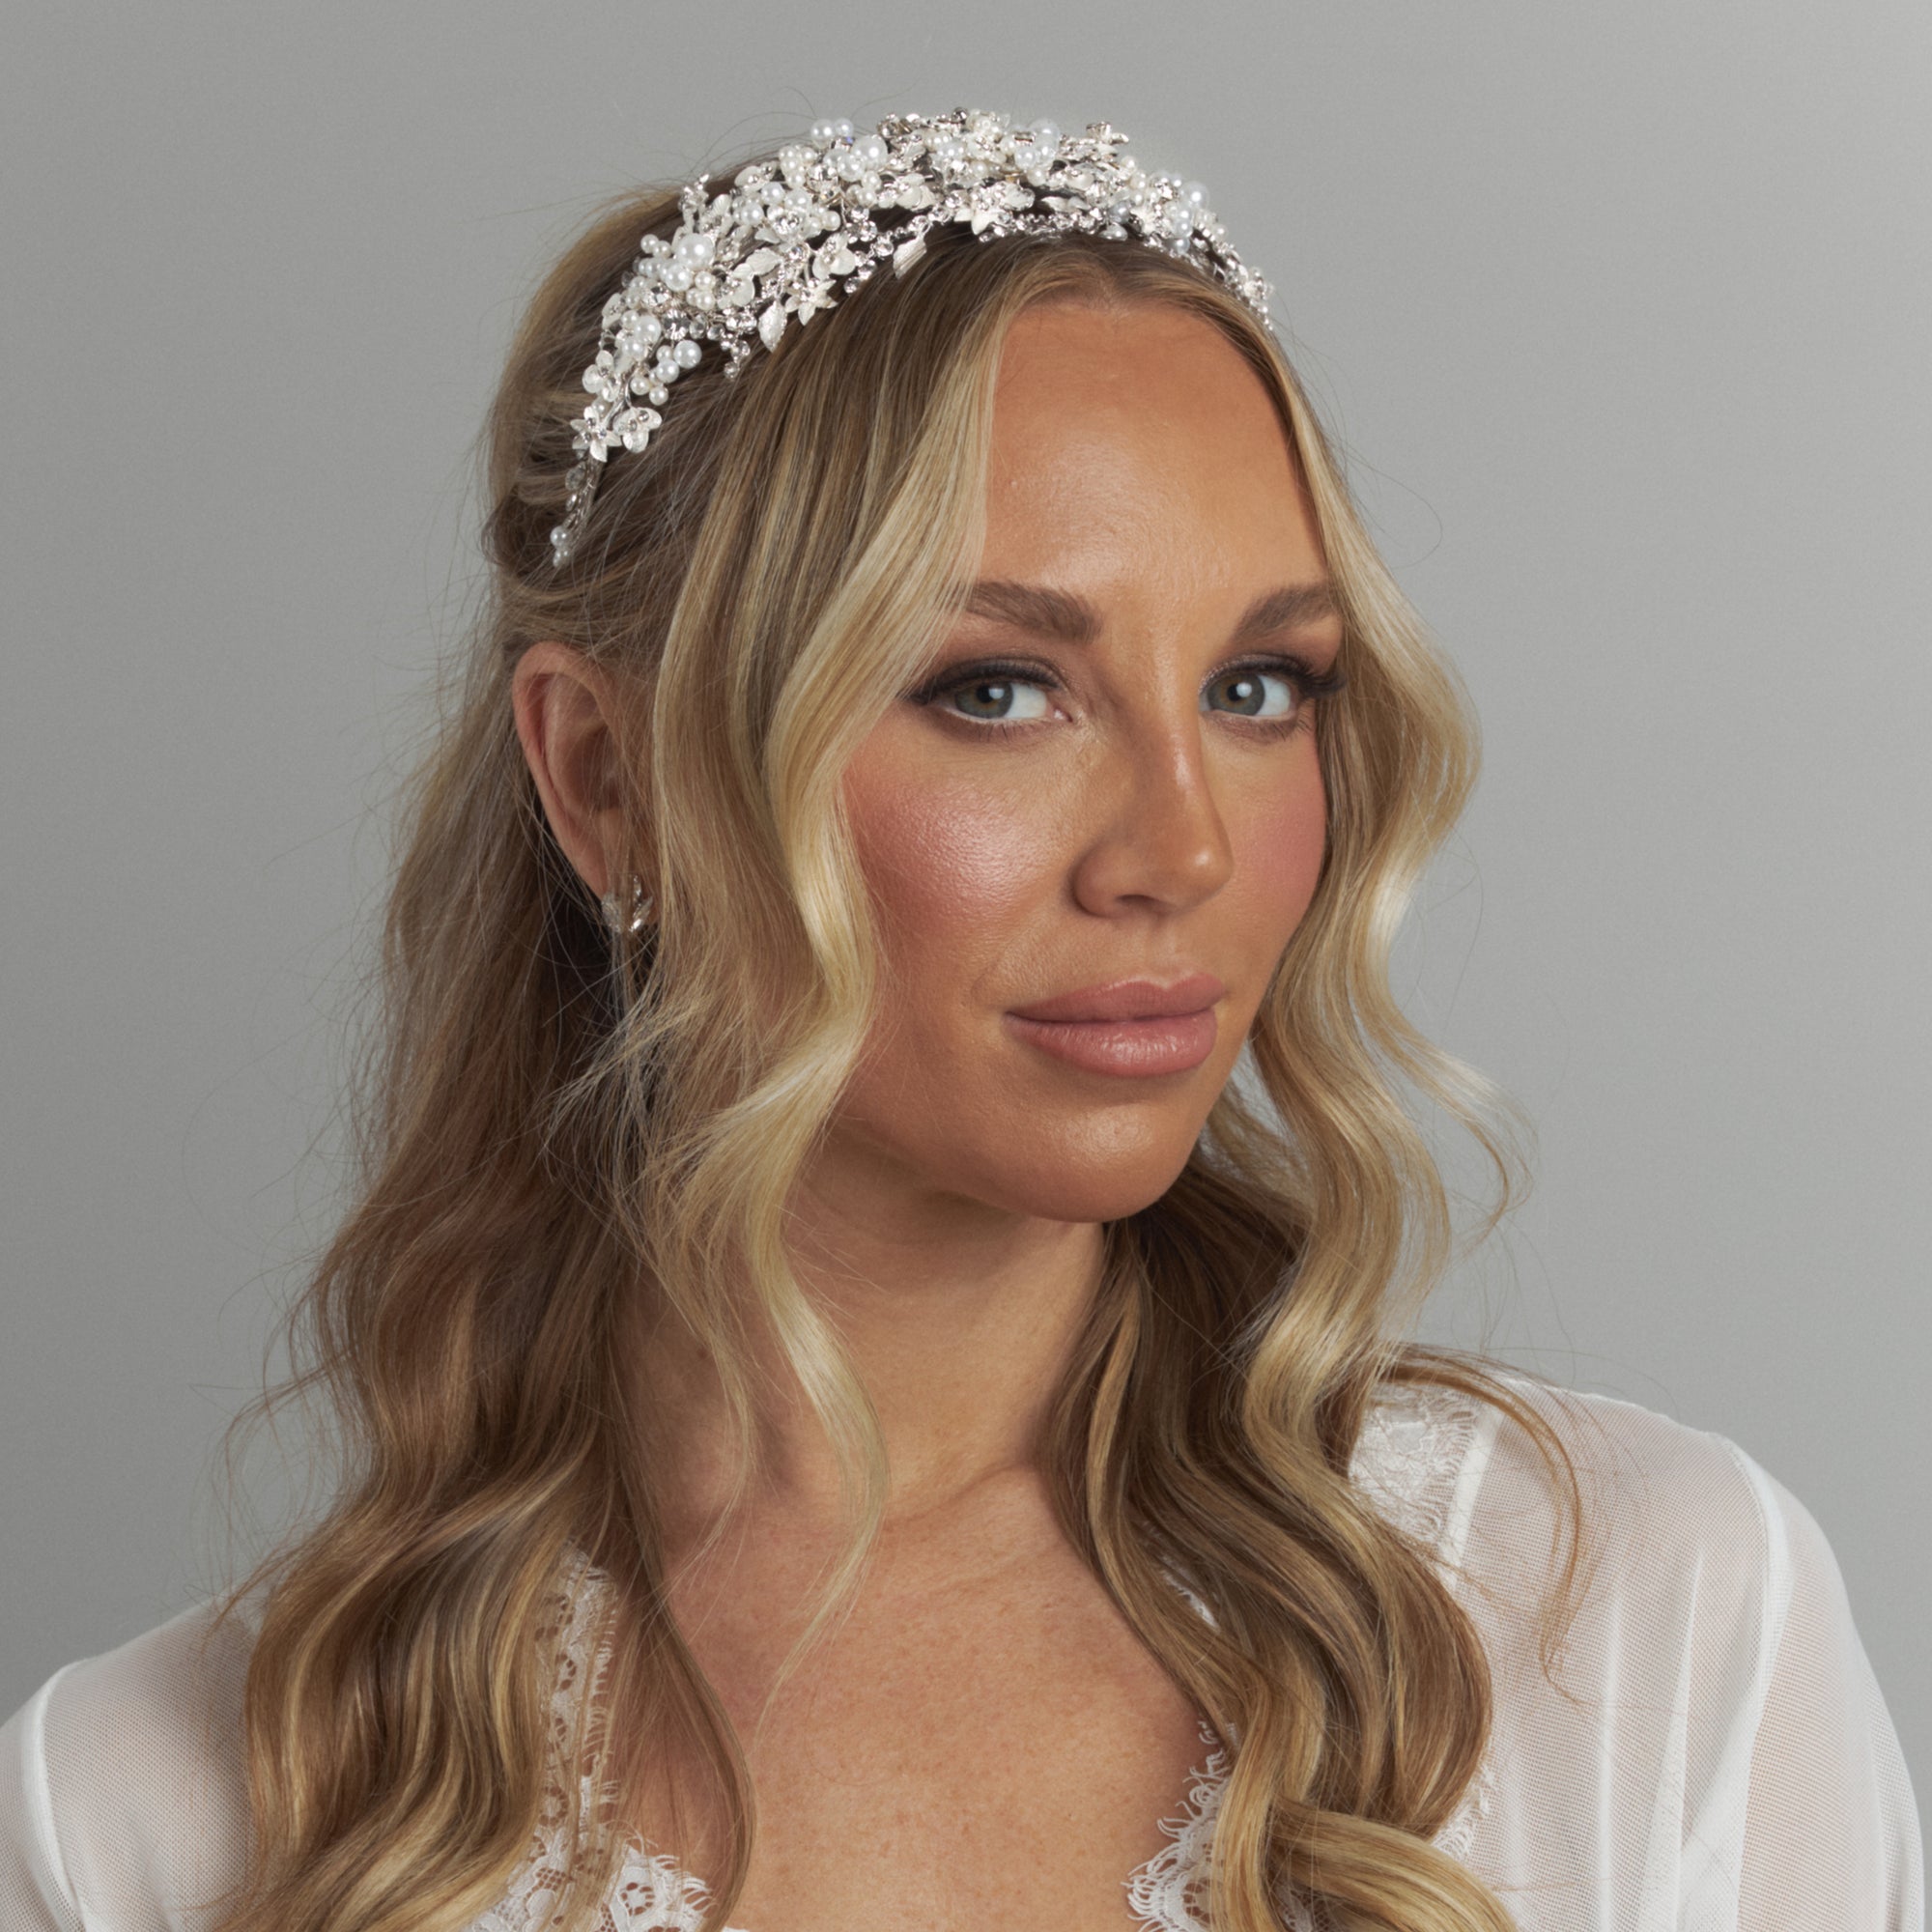 Adria Pearl Bridal wedding Luxury Crystal headpiece